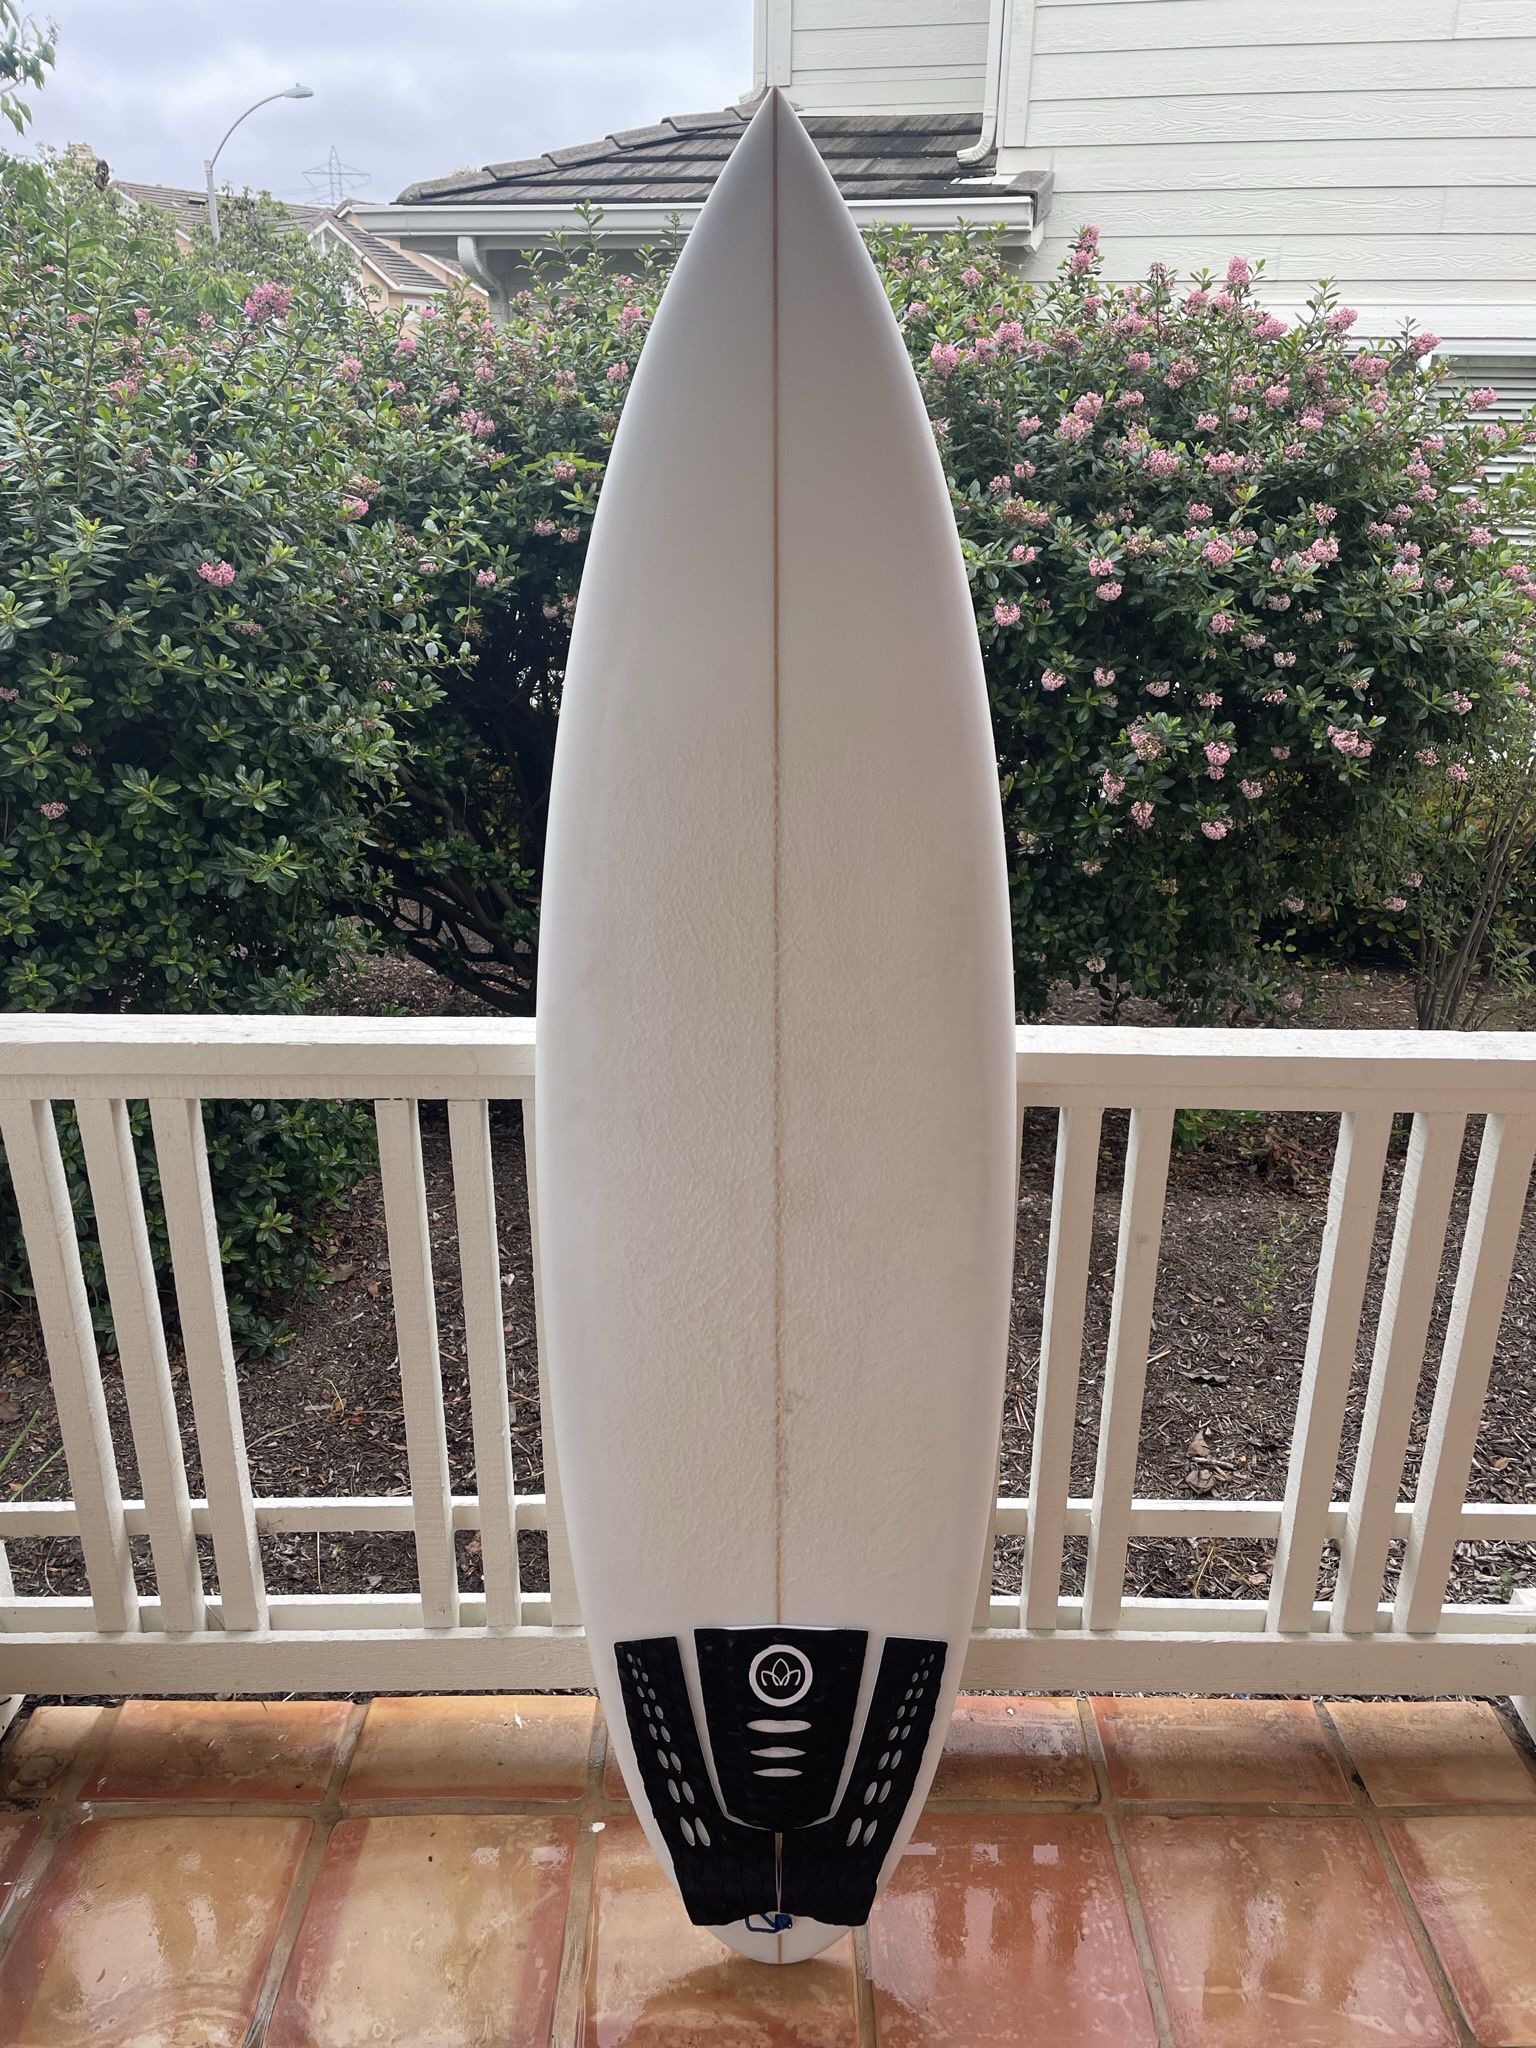 6’0” Shortboard Surfboard